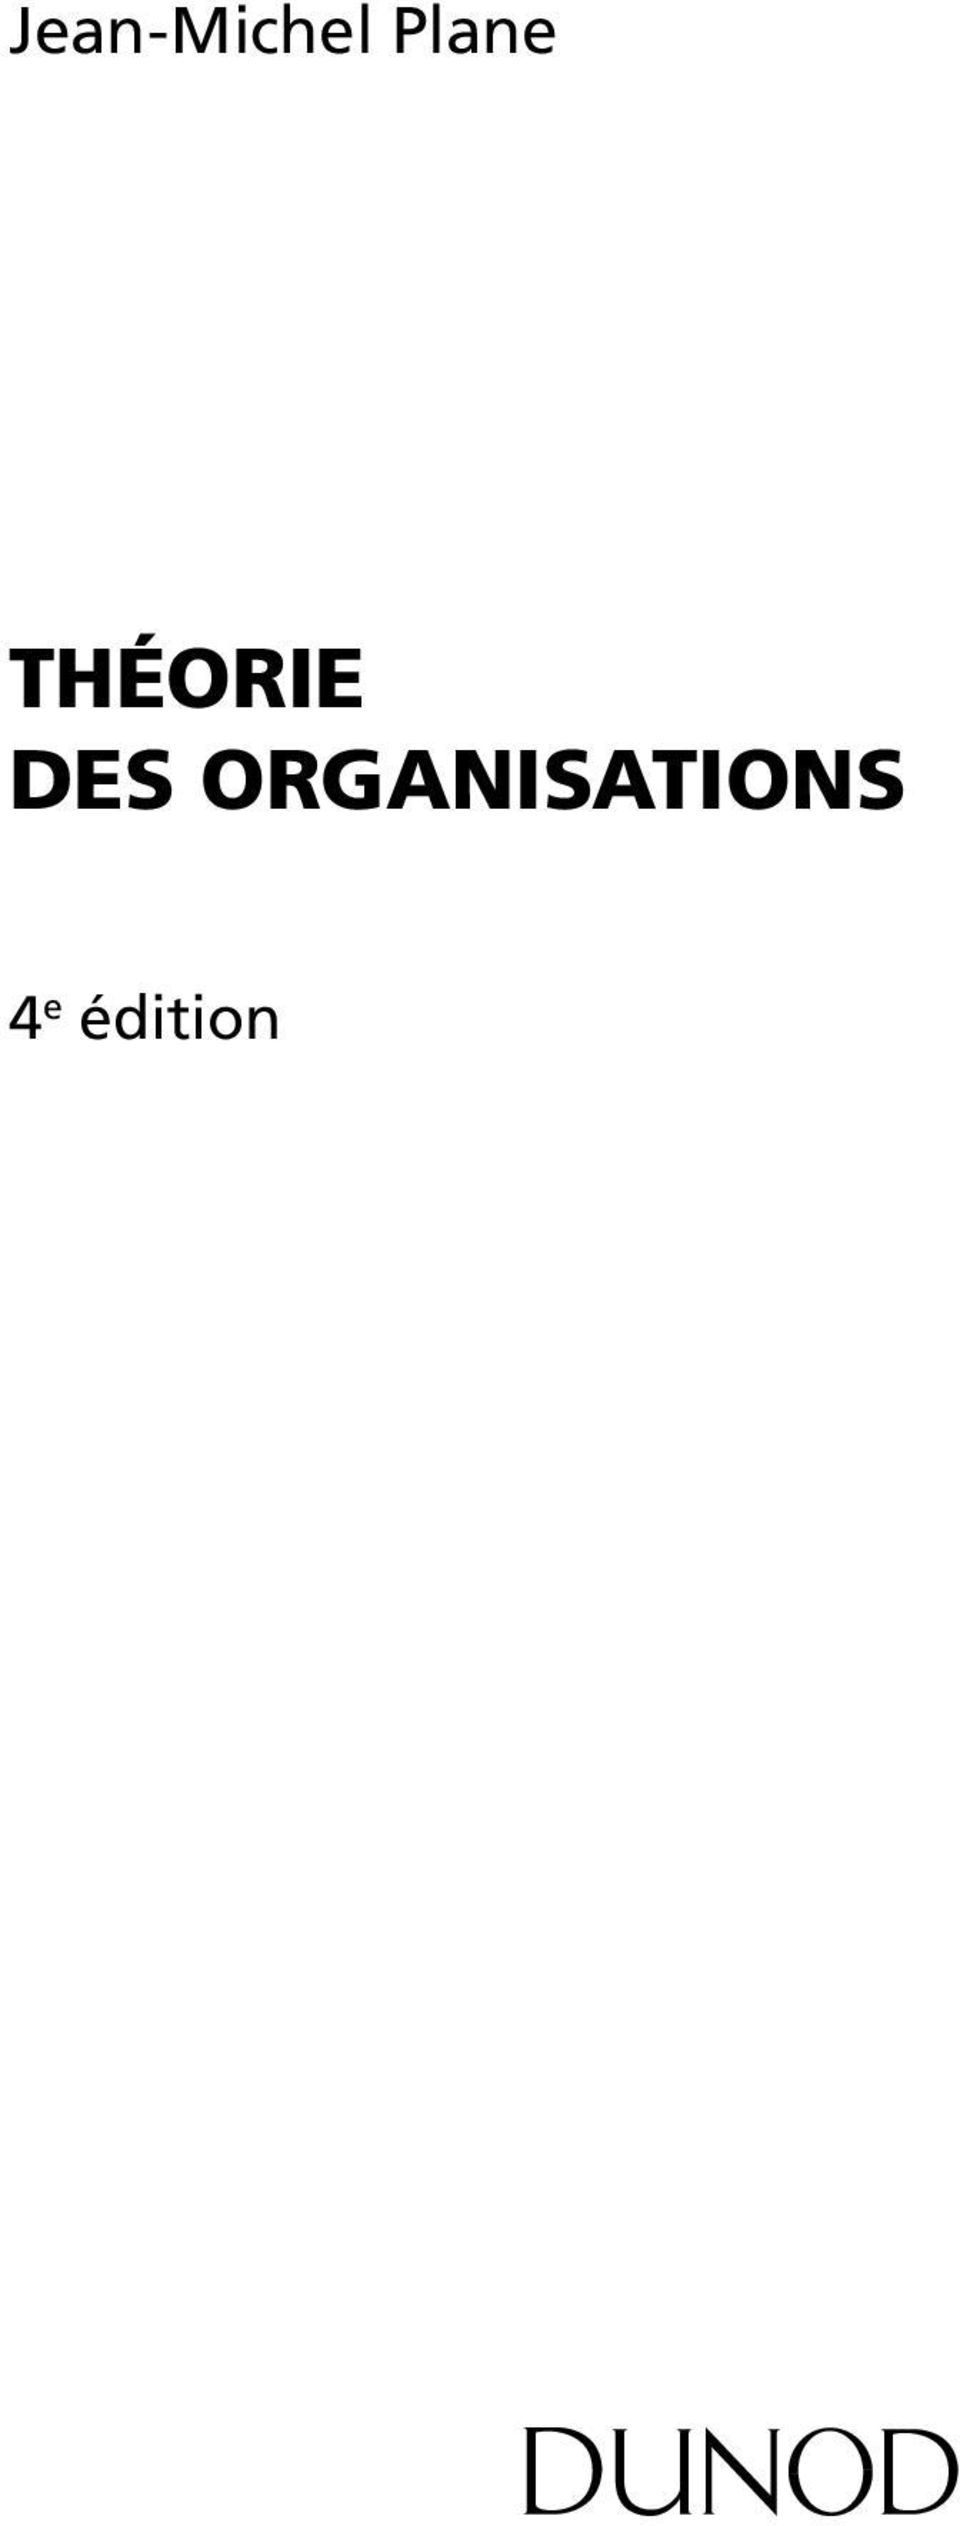 THÉORIE DES ORGANISATIONS - PDF Téléchargement Gratuit